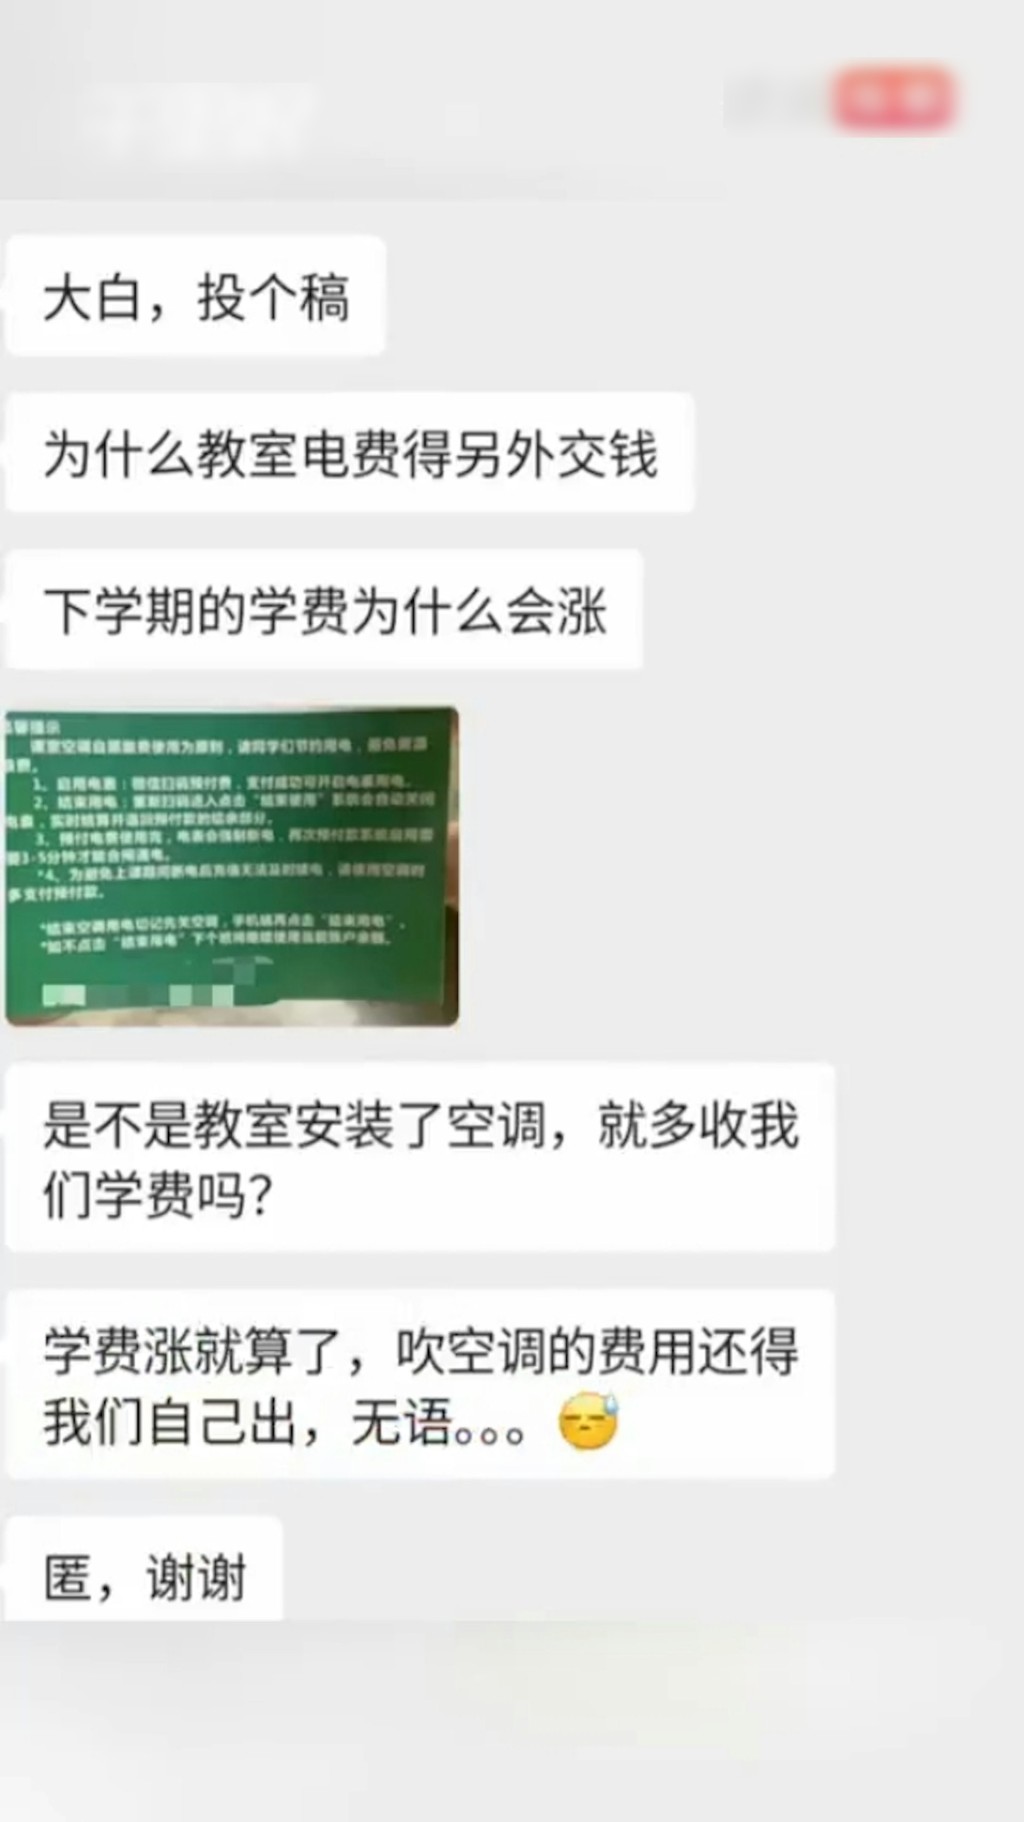 惠州有高校要求學生掃QR Code付錢才可開冷氣上堂，遭外界質疑。